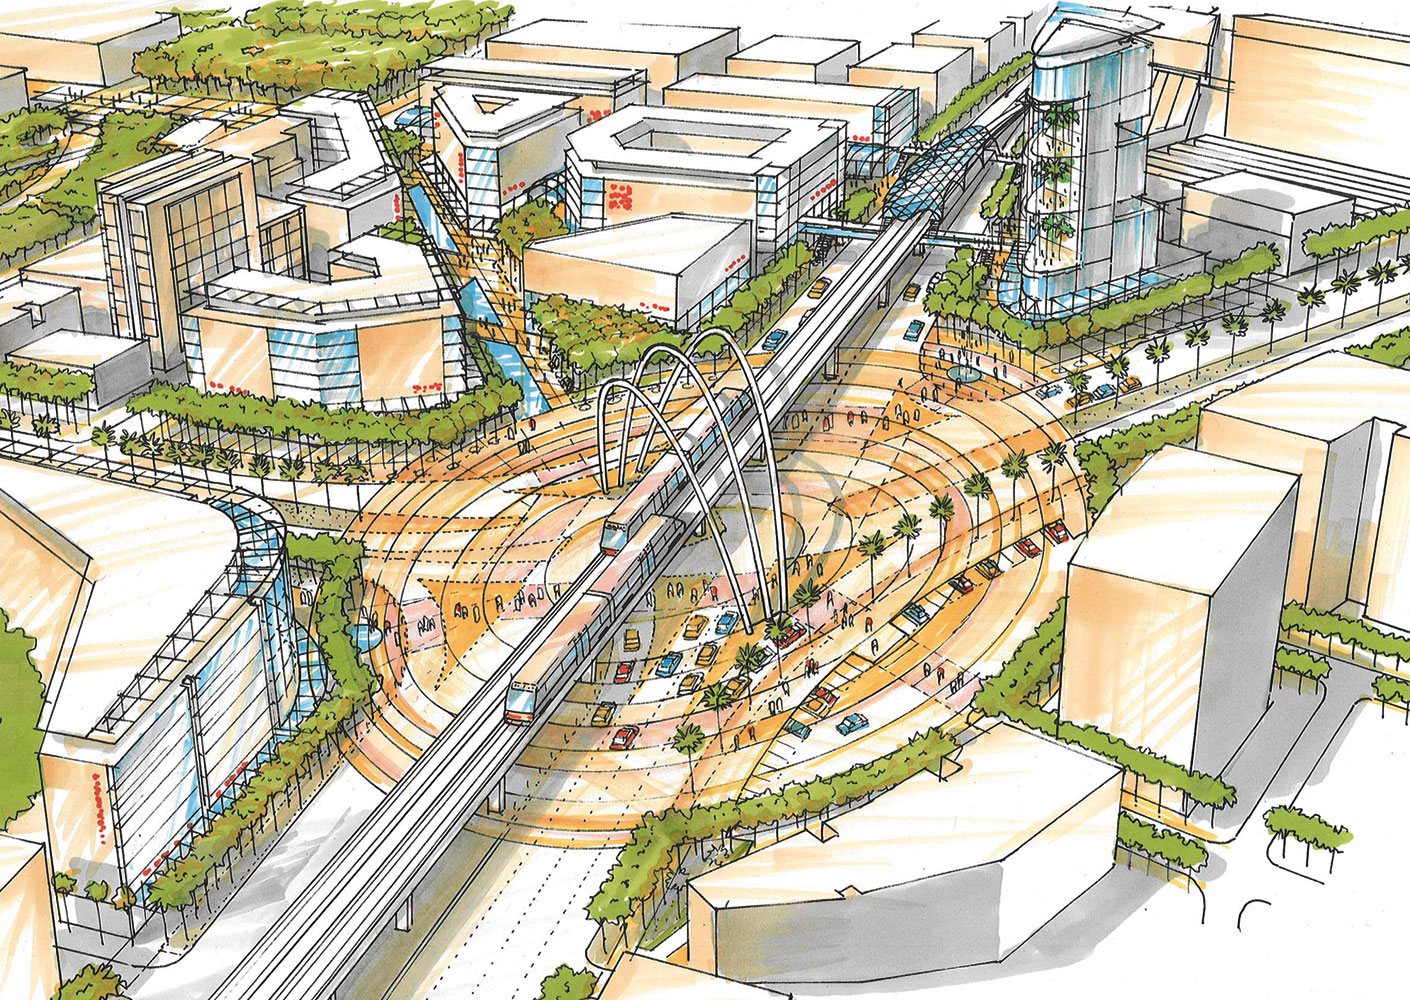 Sketch showing urban design integration of transit line.